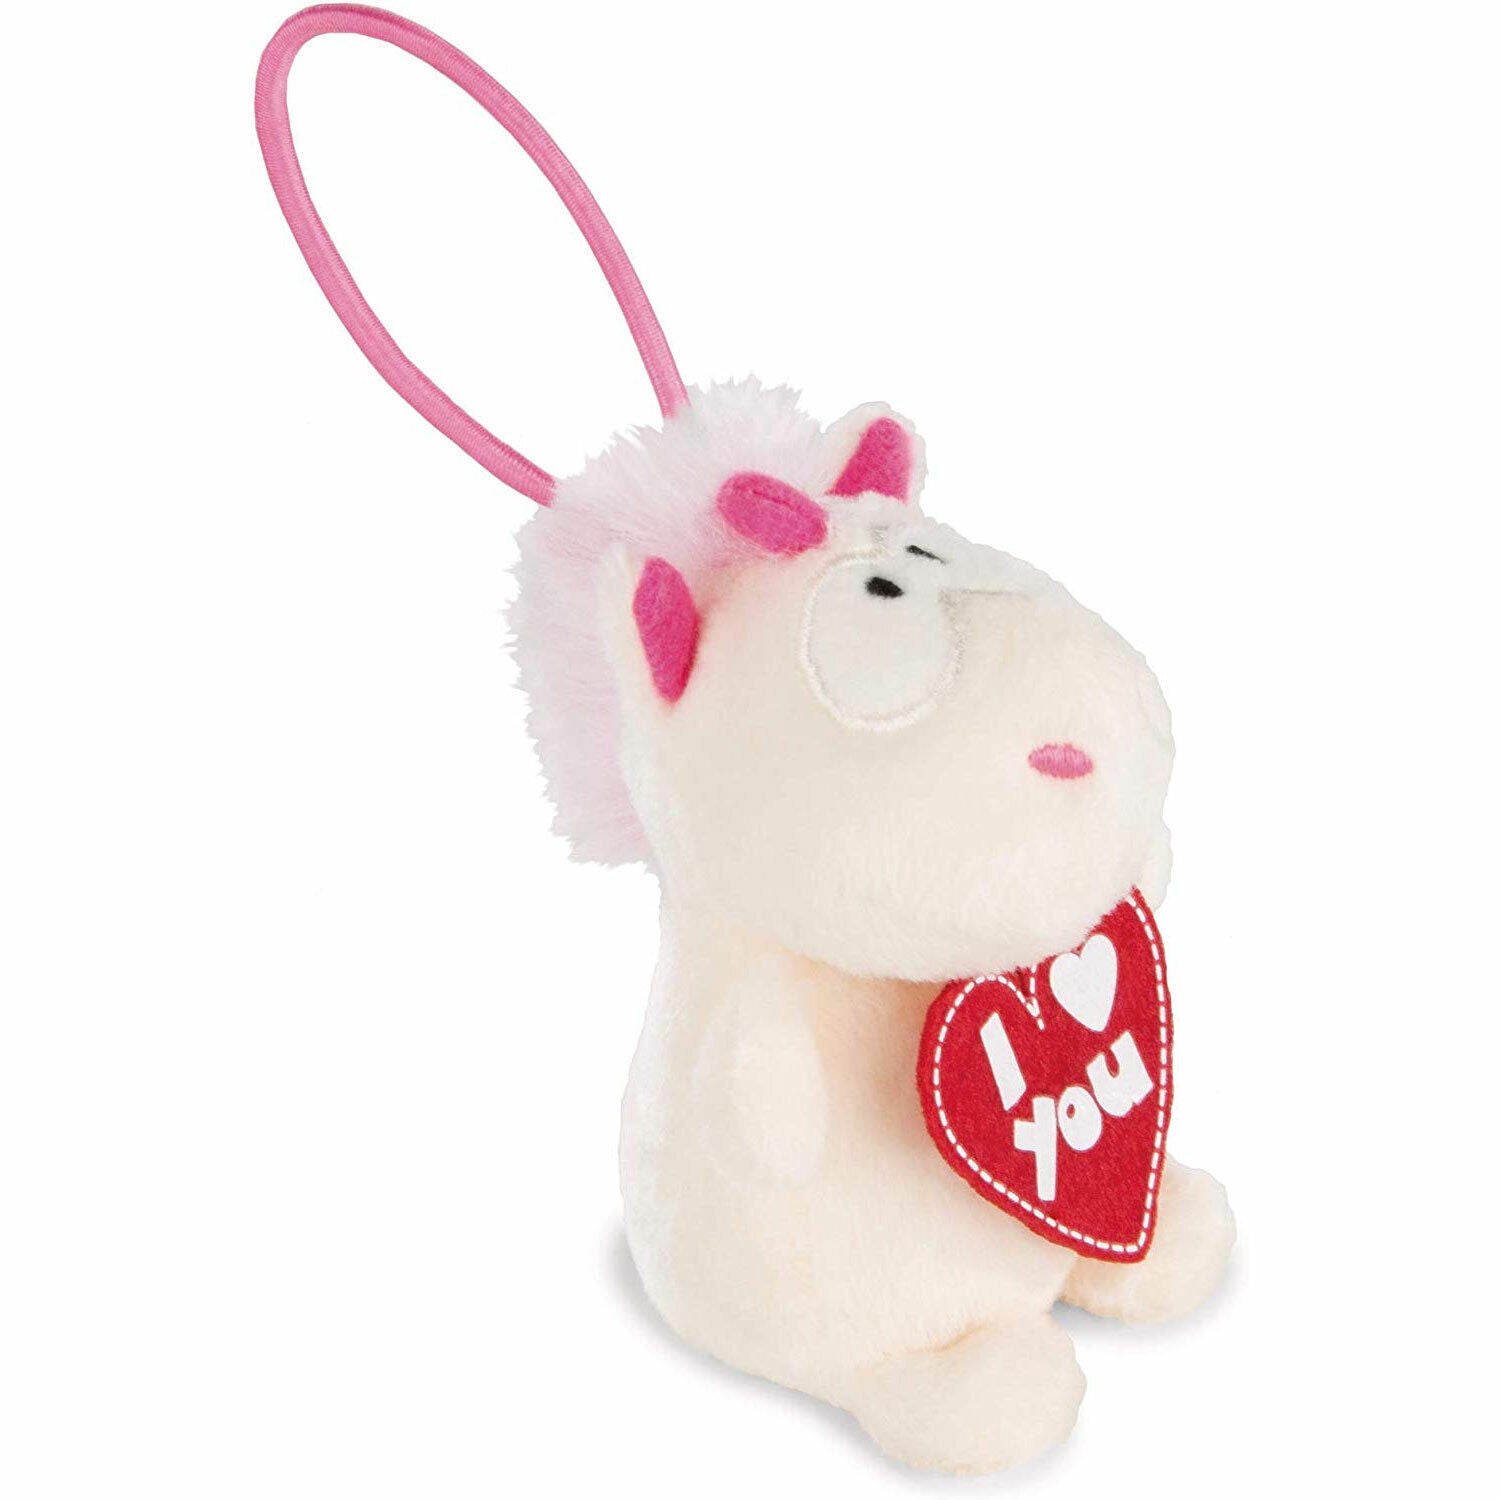 "New Nici Plush 8cm Unicorn Theodor "I Love You" - Adorable Gift Idea"